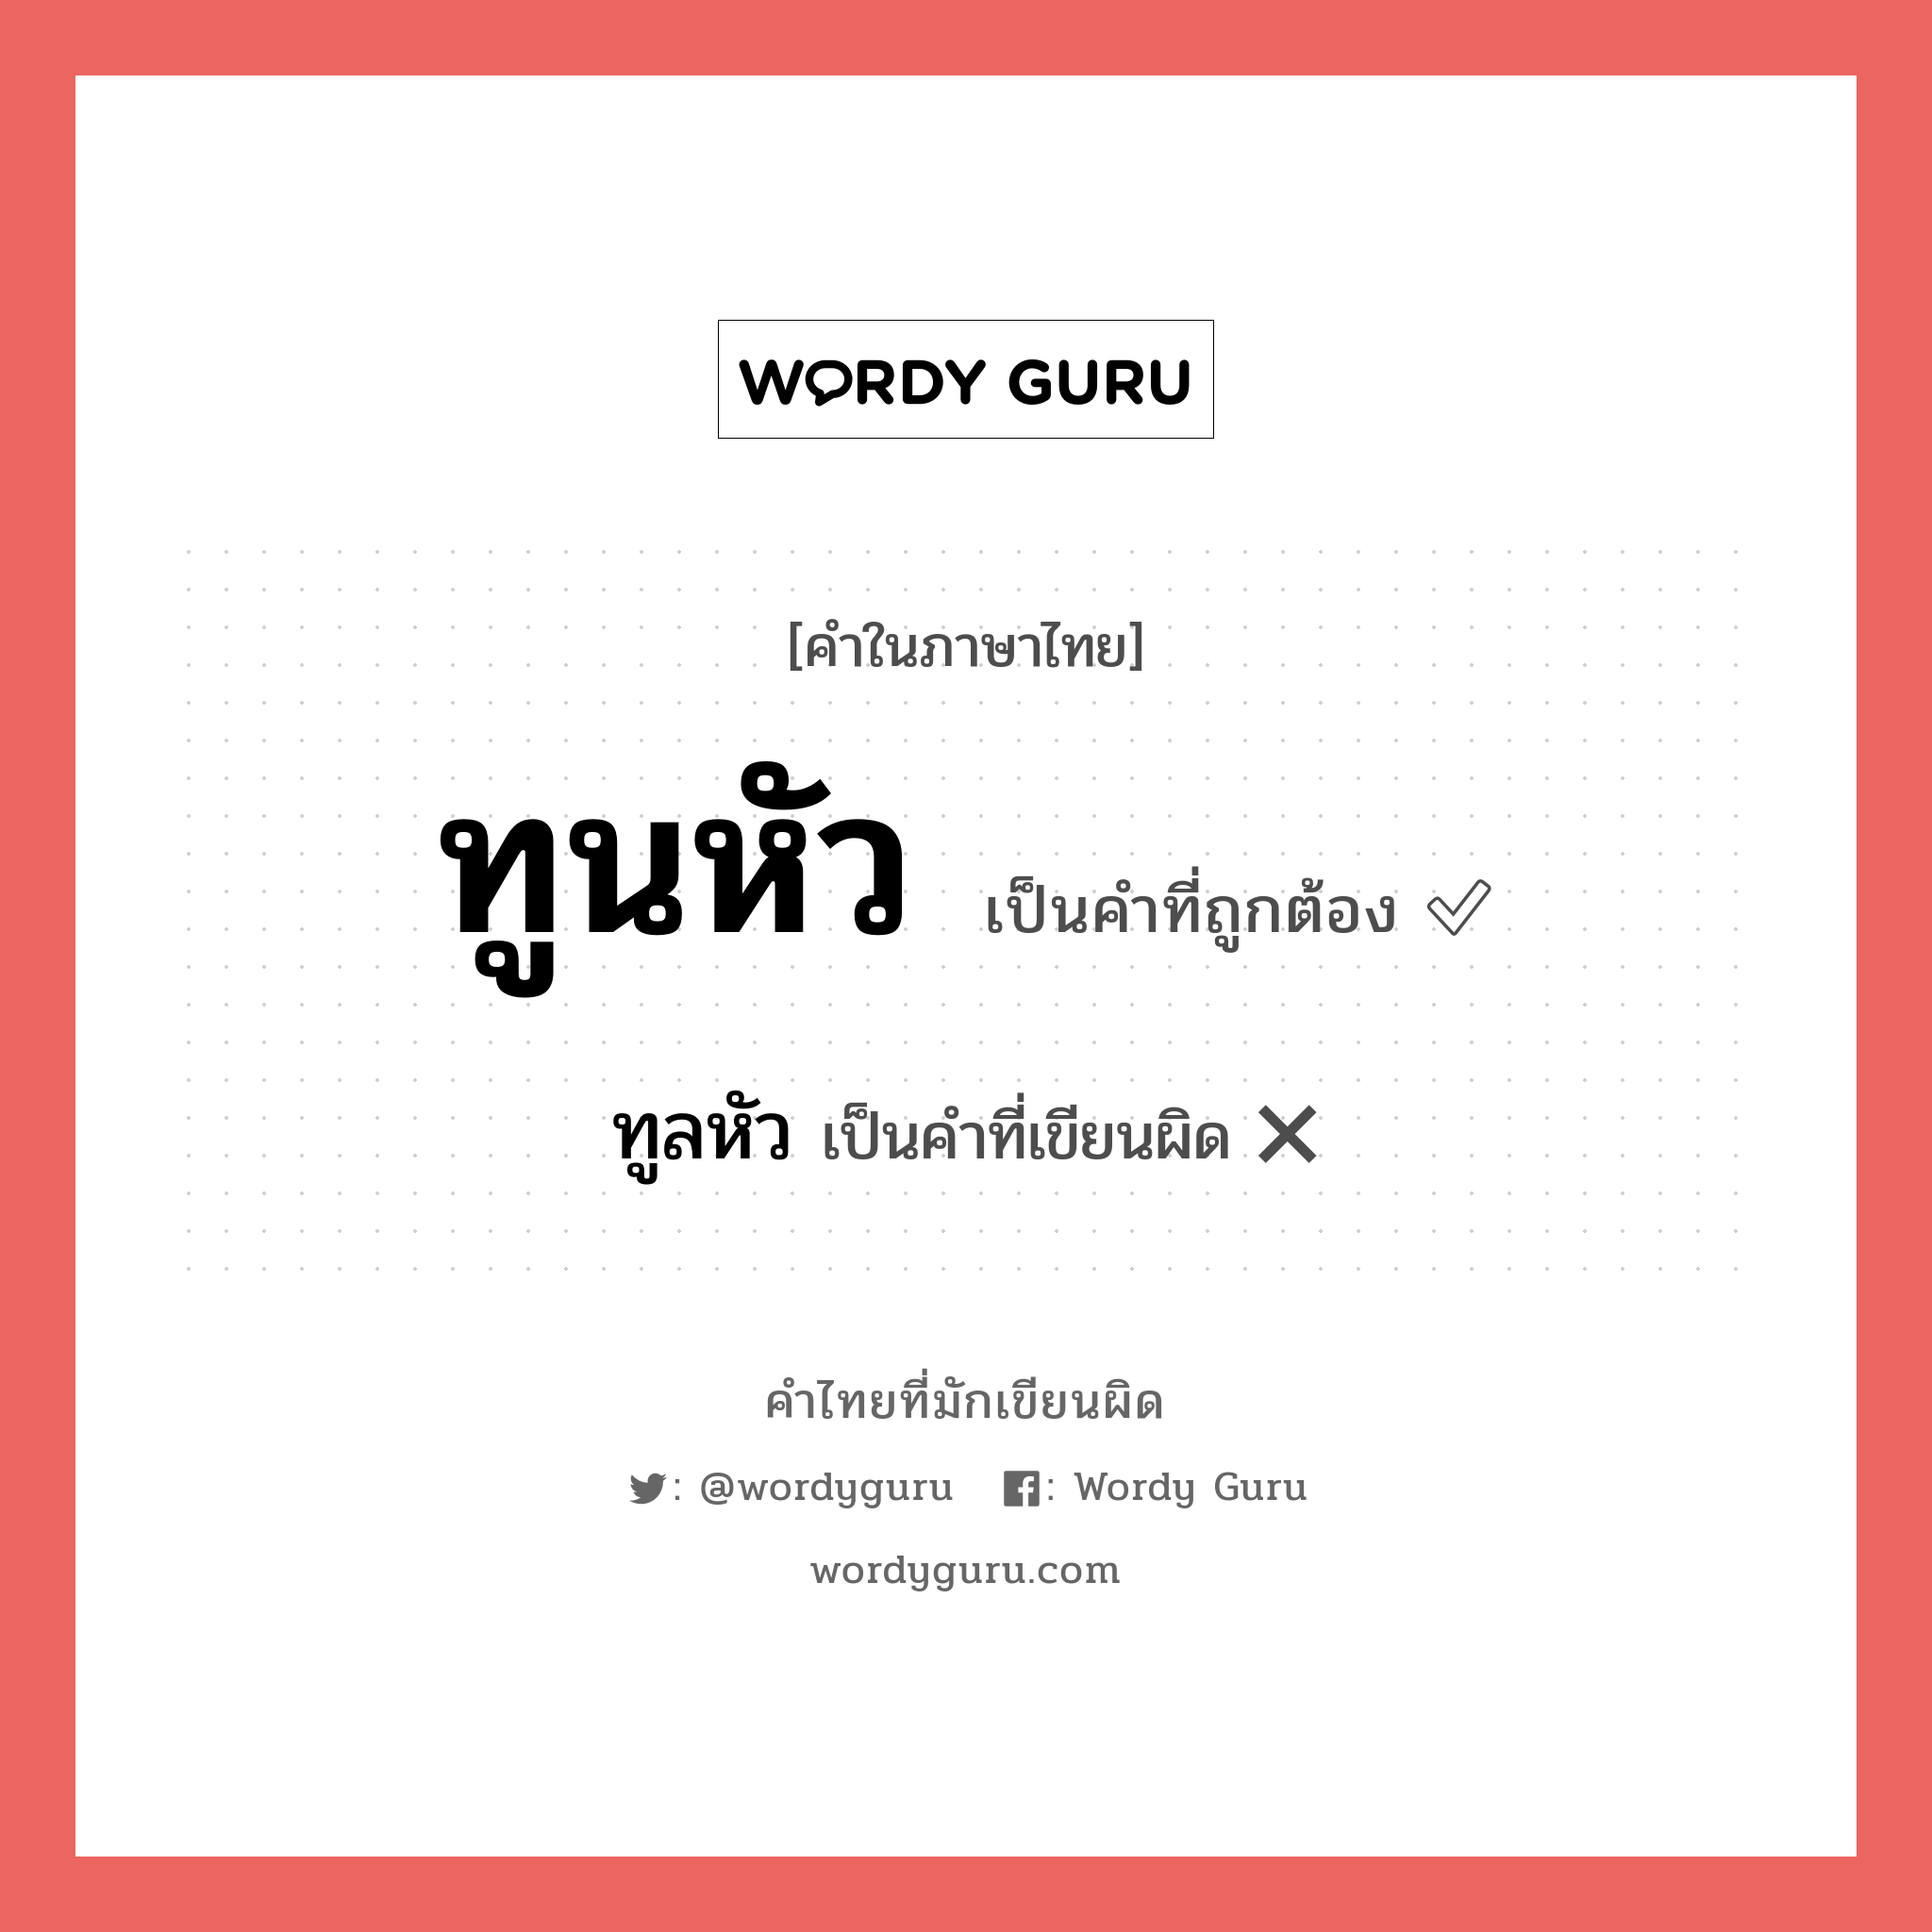 ทูลหัว หรือ ทูนหัว คำไหนเขียนถูก?, คำในภาษาไทยที่มักเขียนผิด ทูลหัว คำที่ผิด ❌ ทูนหัว